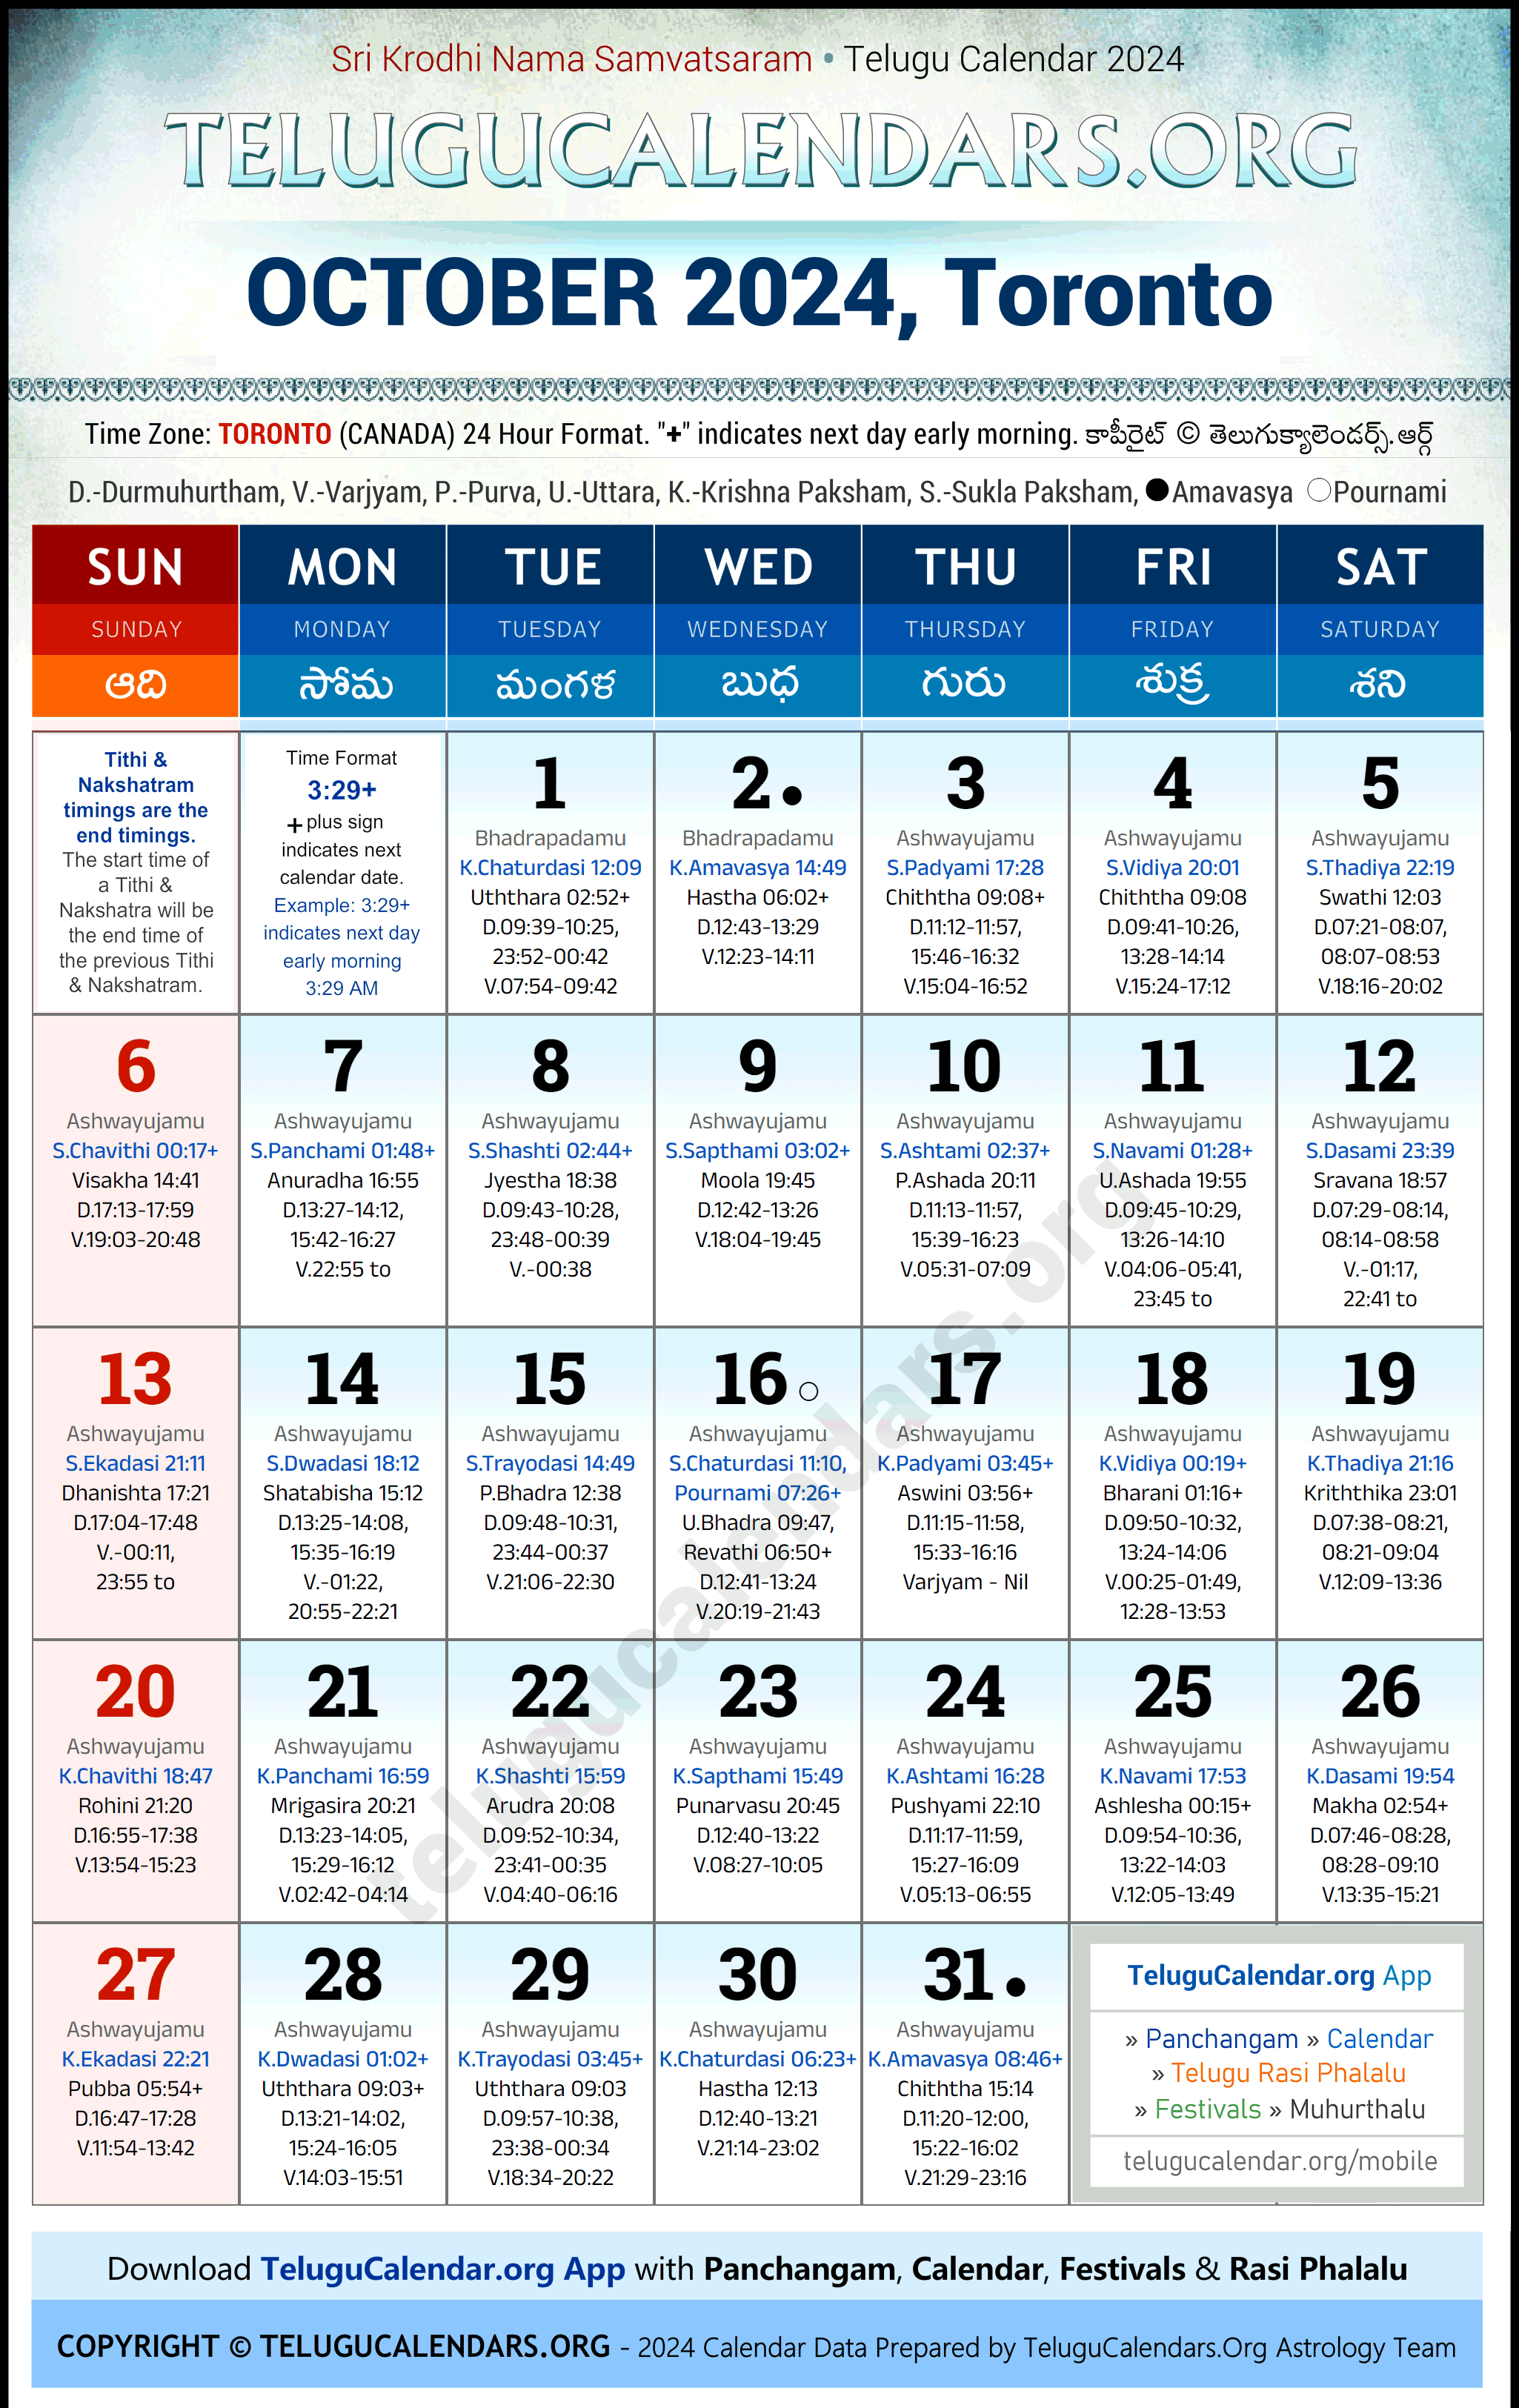 Telugu Calendar 2024 October Festivals for Toronto